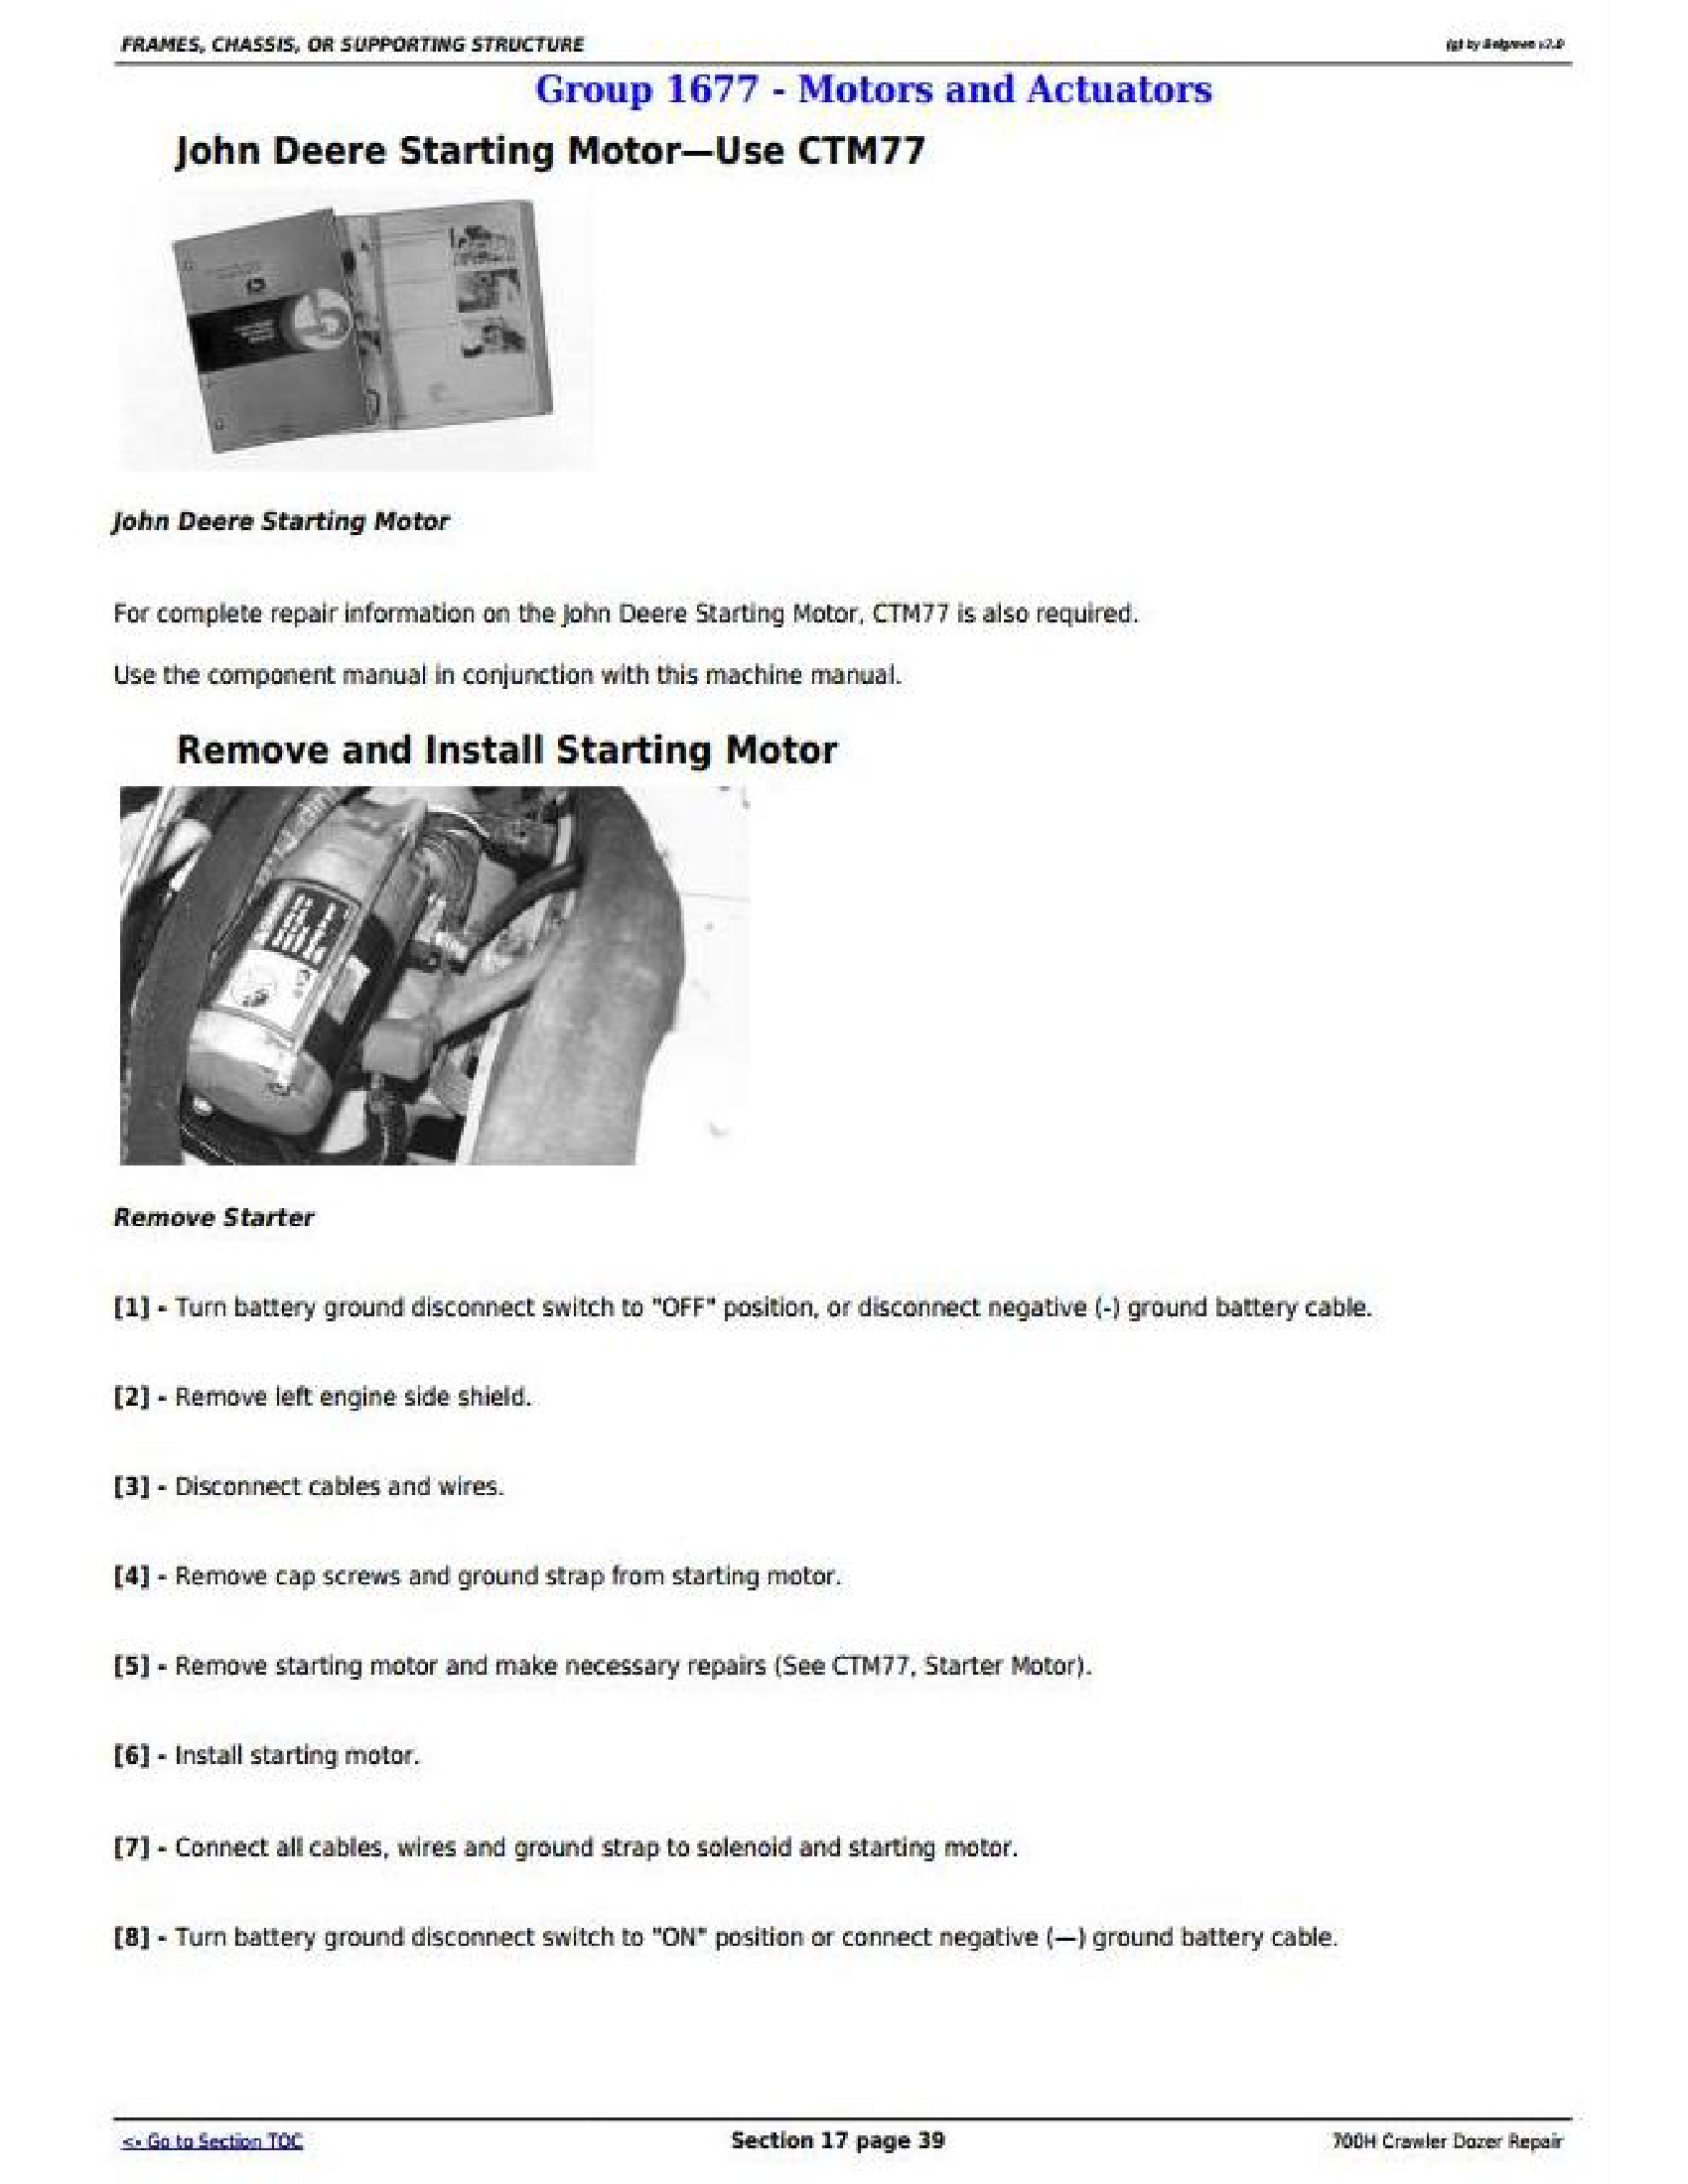 John Deere 700H manual pdf